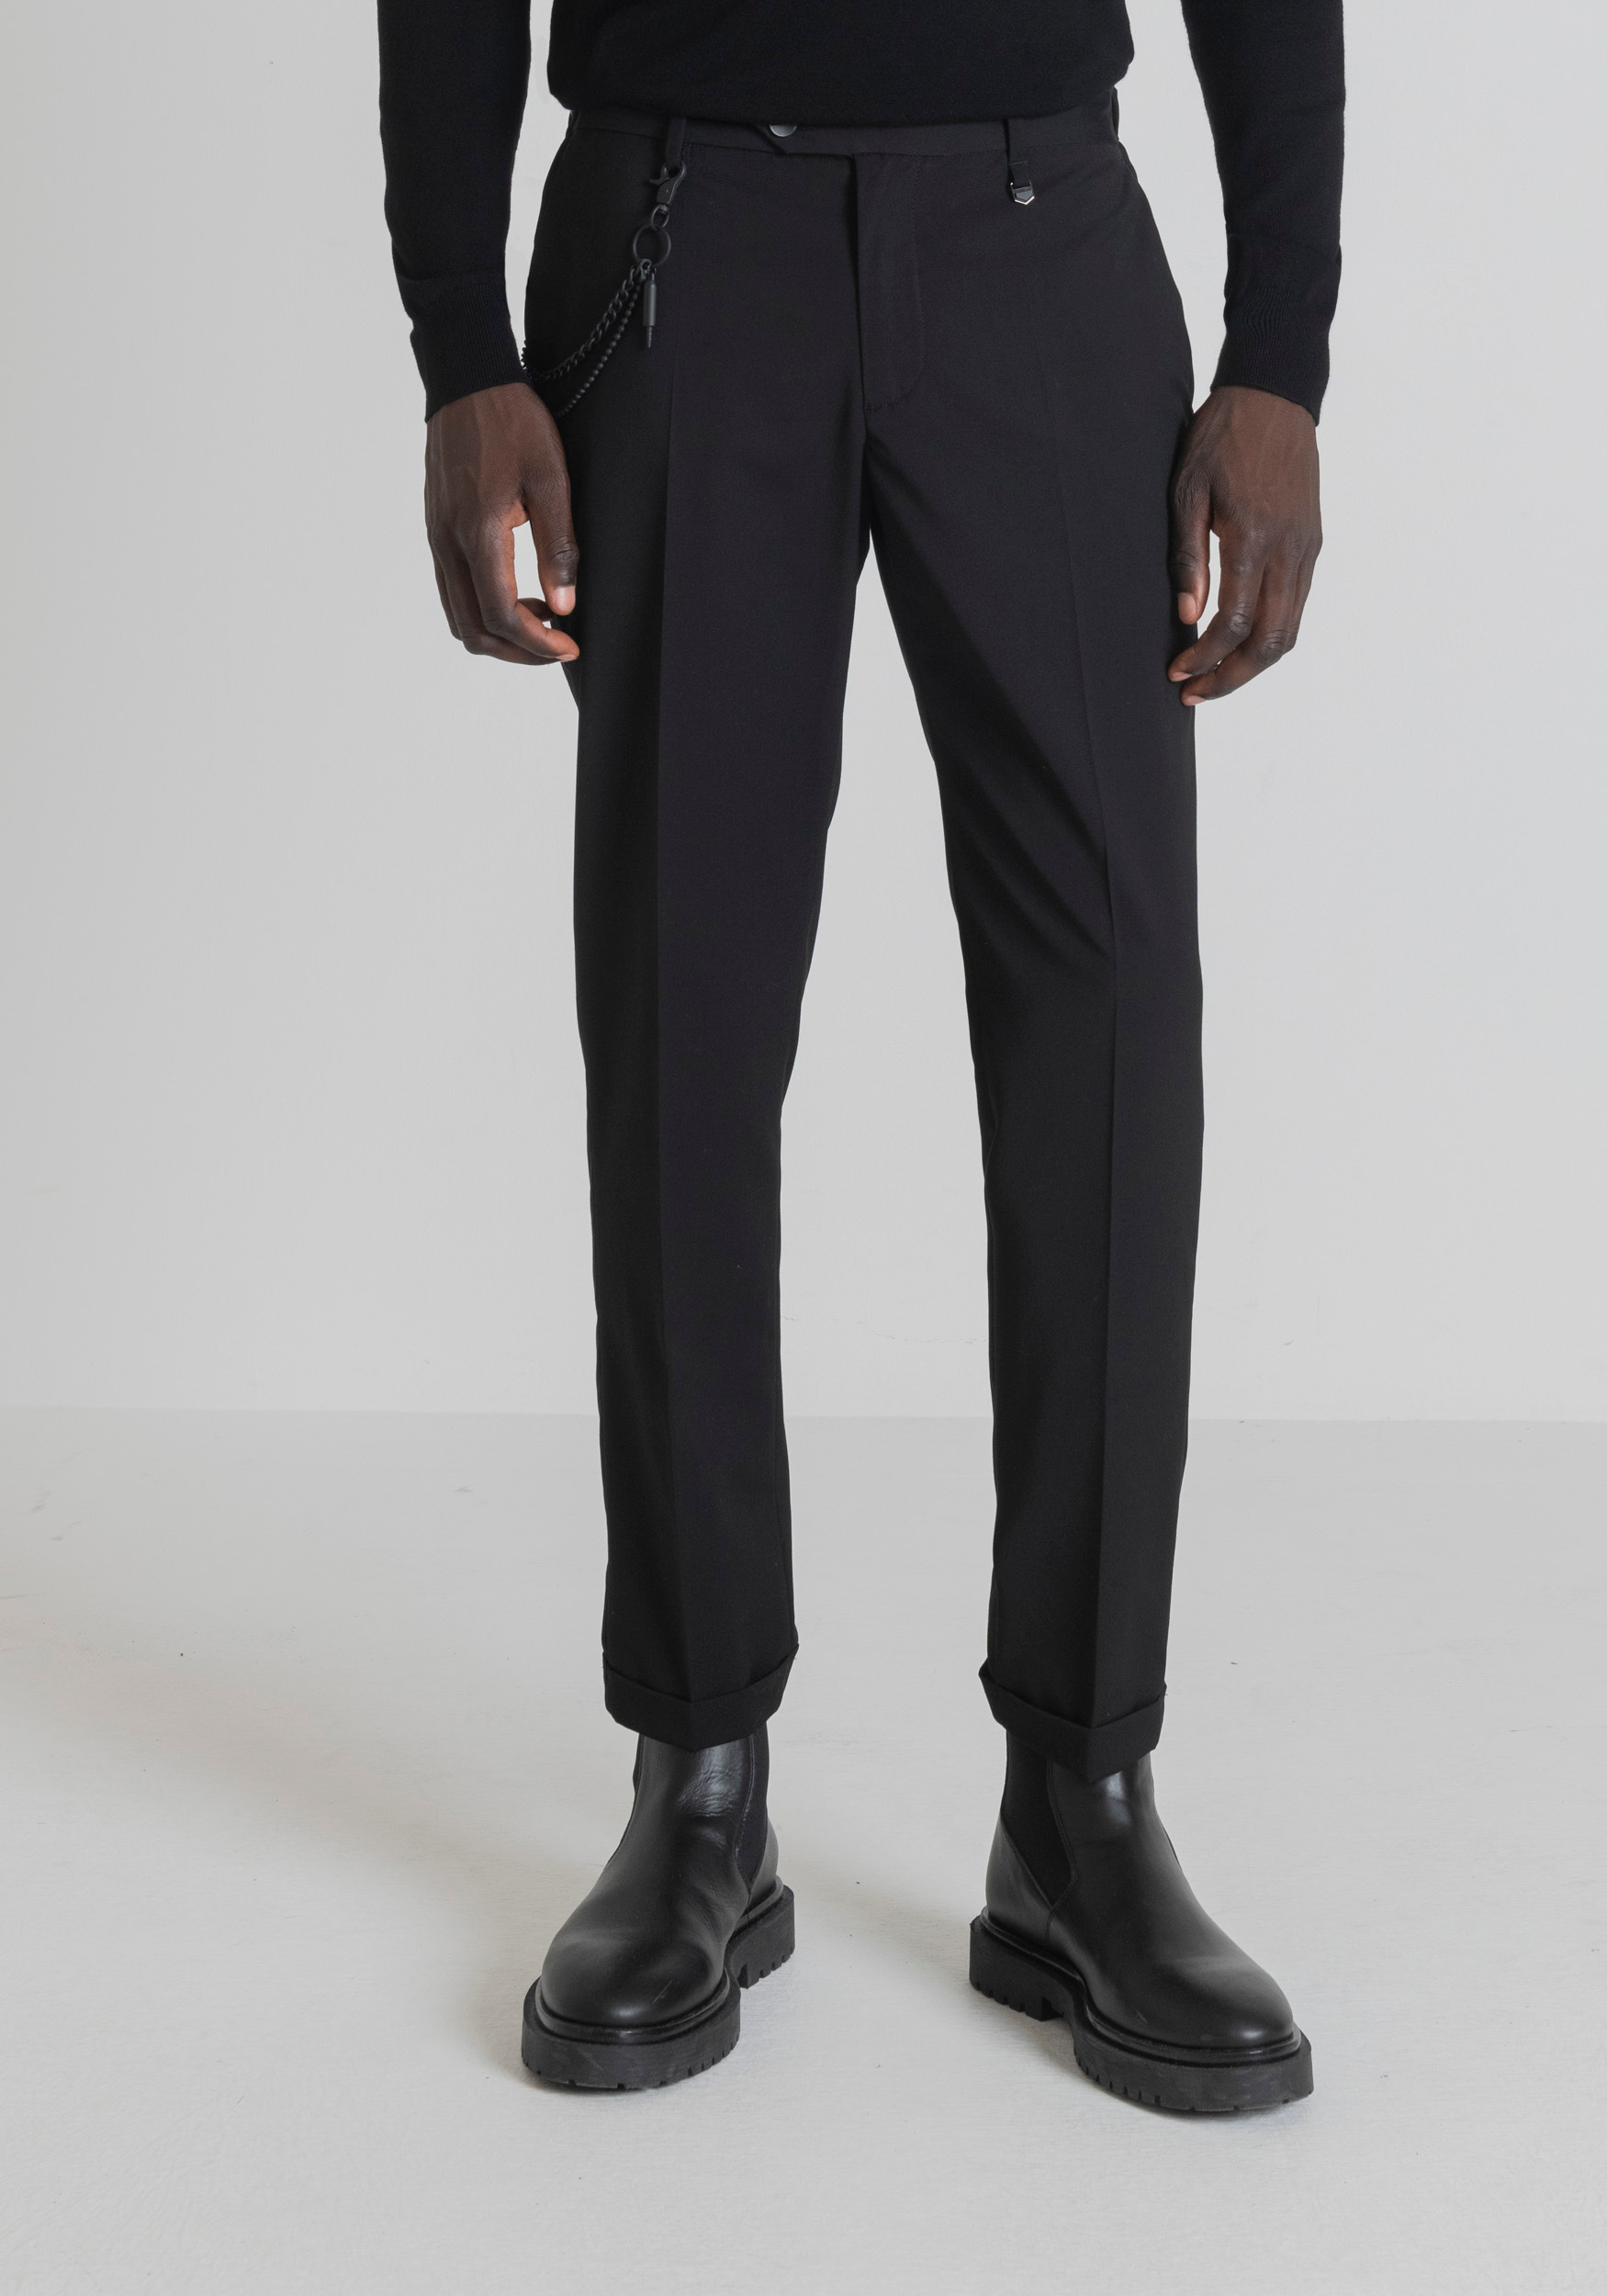 Antony Morato Pantalon Slim Fit Rad A La Cheville Avec Pli Central Noir | Homme Pantalons